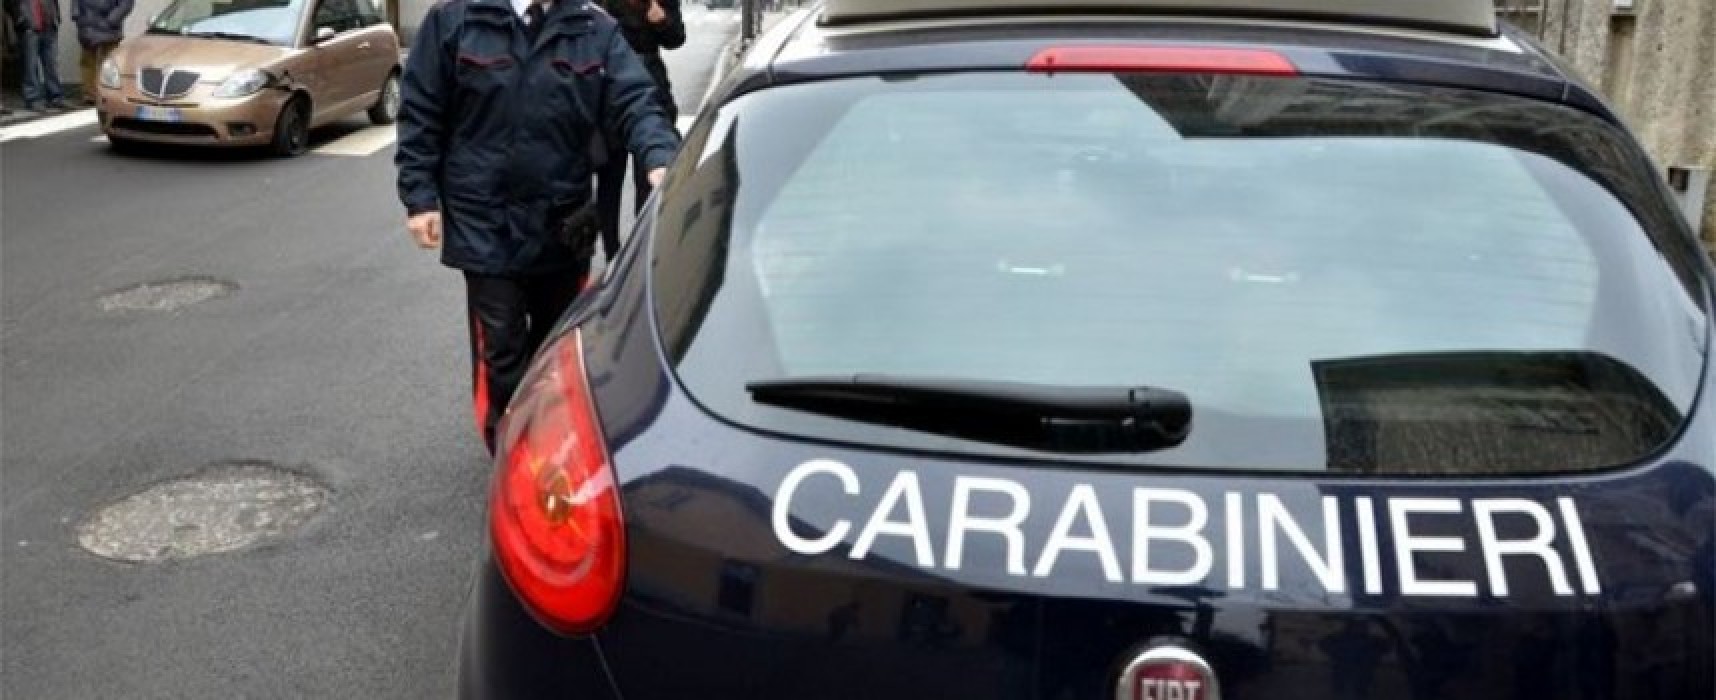 Ruba borsello da auto in sosta, arrestato giovane rumeno